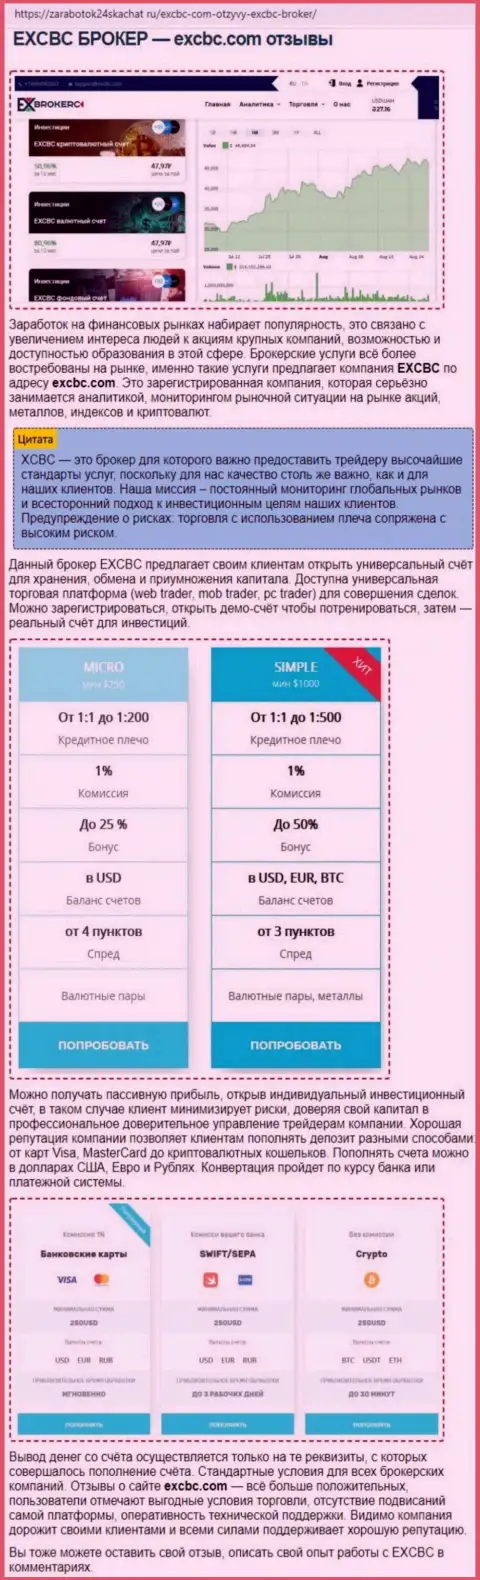 Сведения о Форекс брокерской компании EXCBC в обзорной публикации на web-портале Zarabotok24Skachat Ru